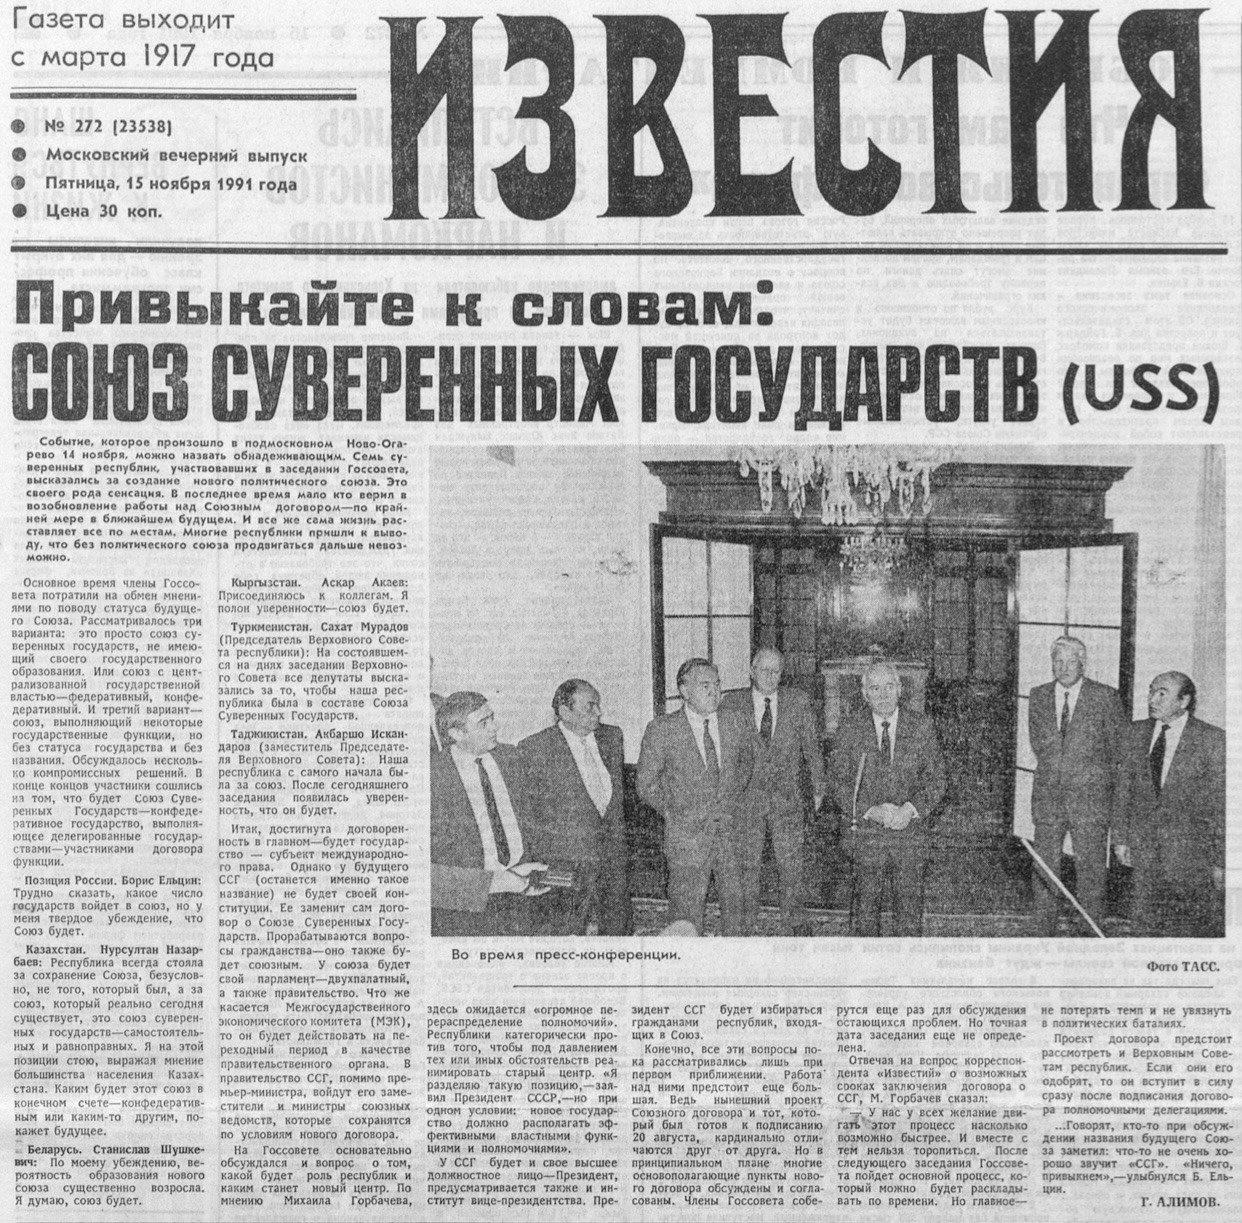 Передовица газеты «Известия» за 15 ноября 1991 год. Скан